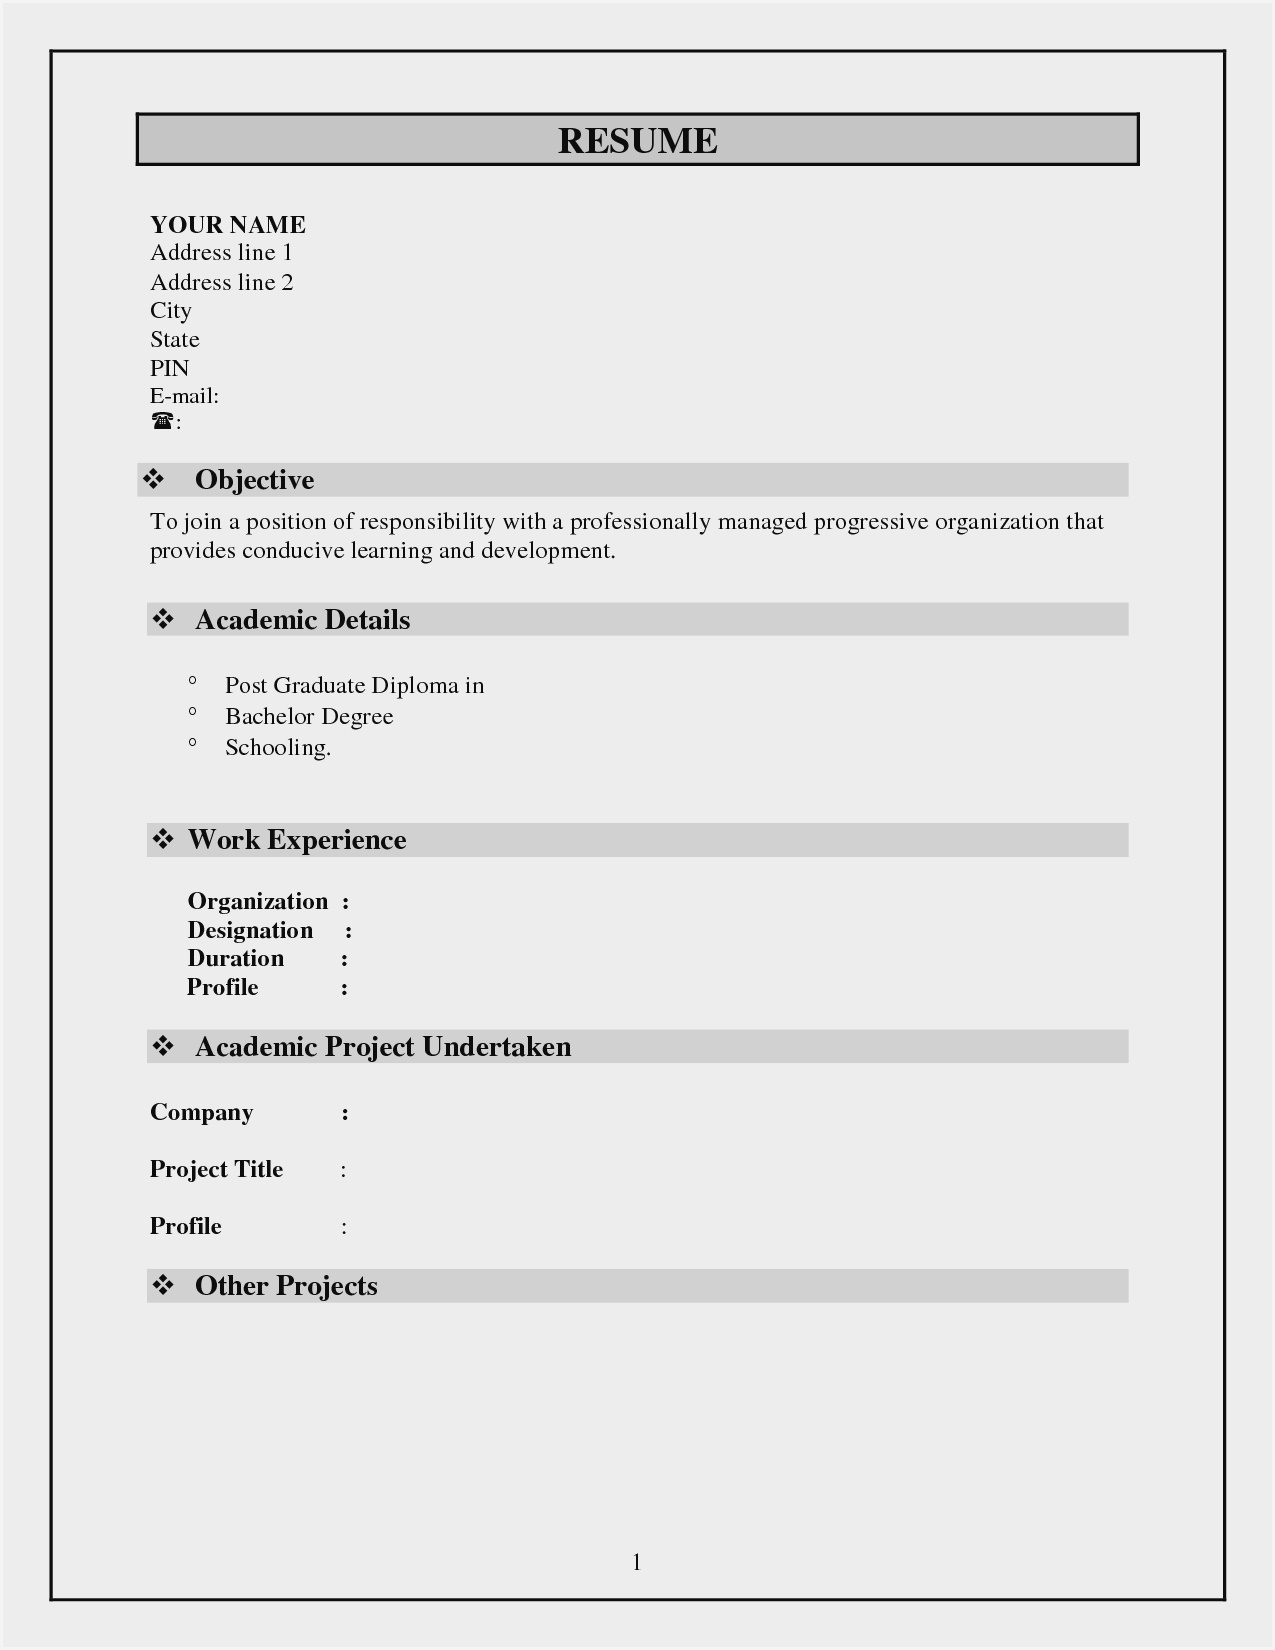 Blank Resume Format Pdf Free Download - Resume : Resume Inside Free Blank Cv Template Download